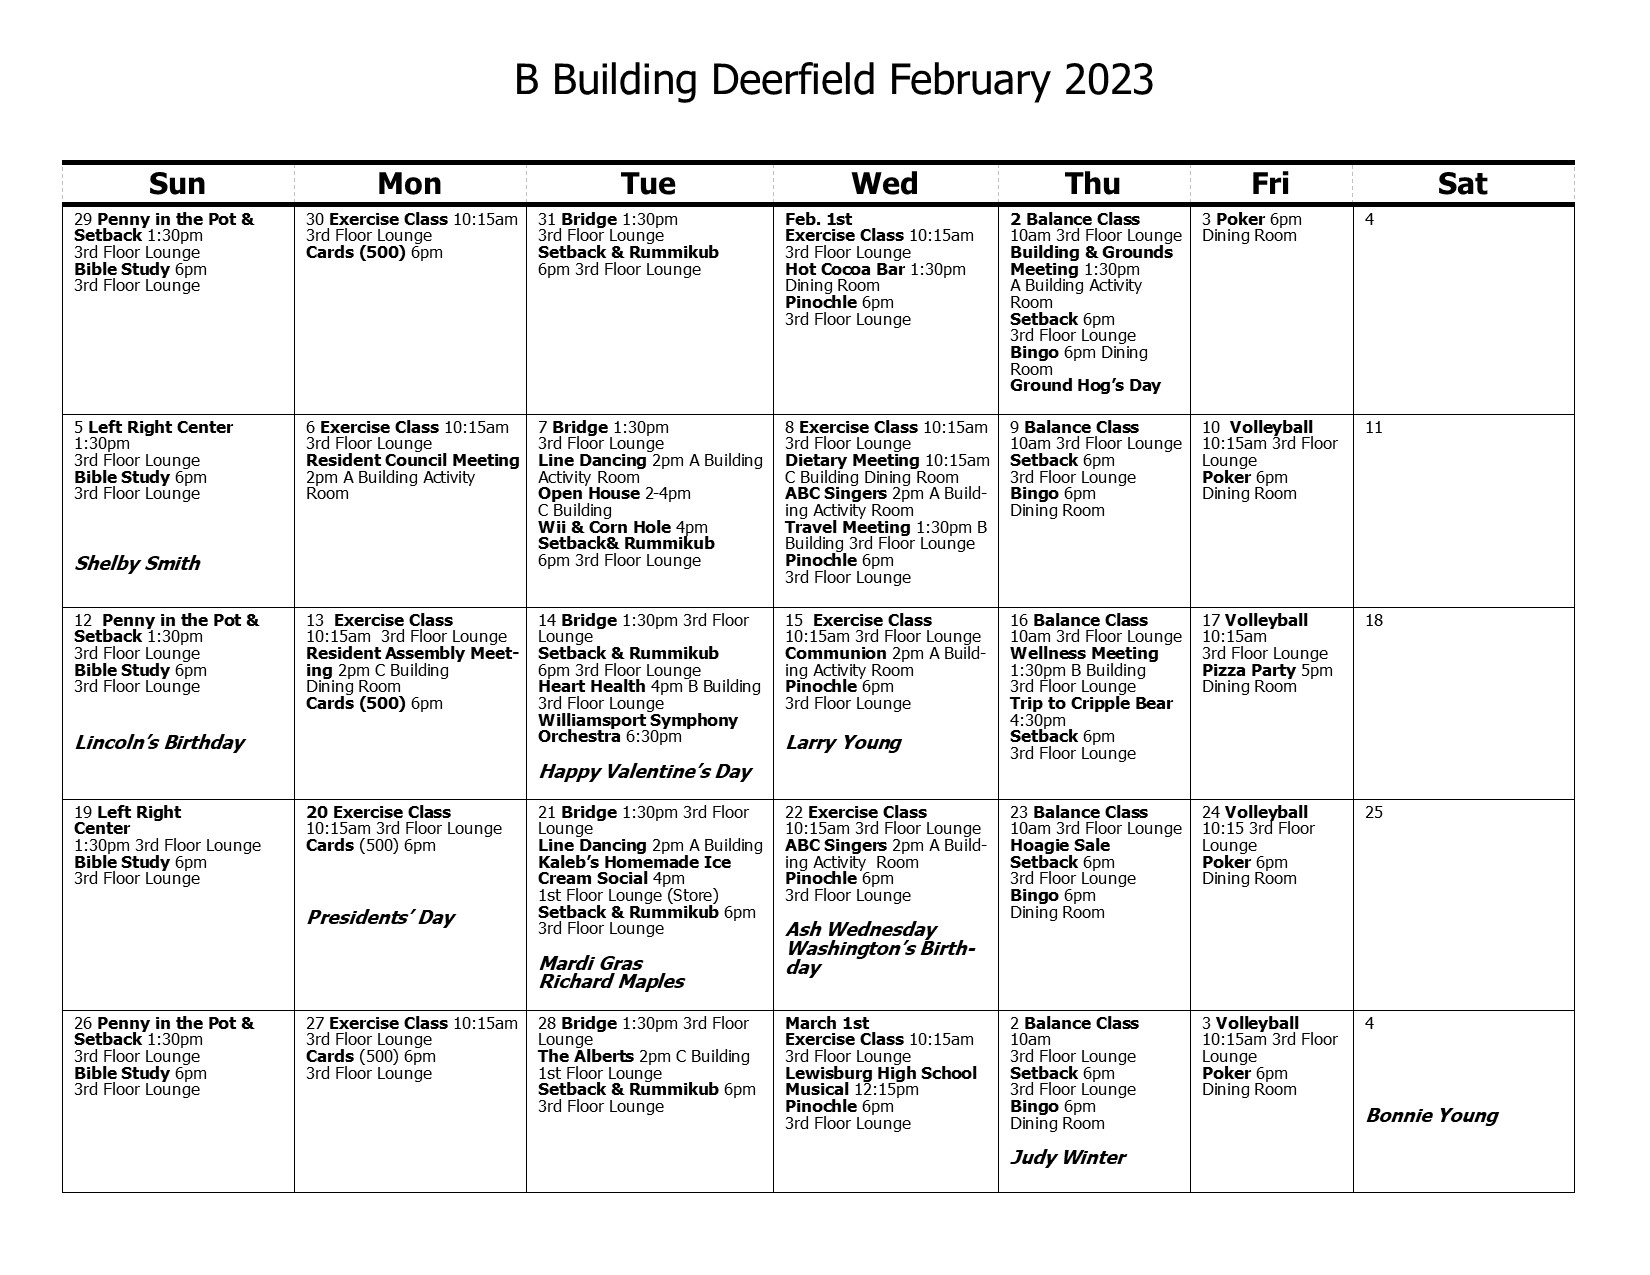 B Building Calendar February 2023